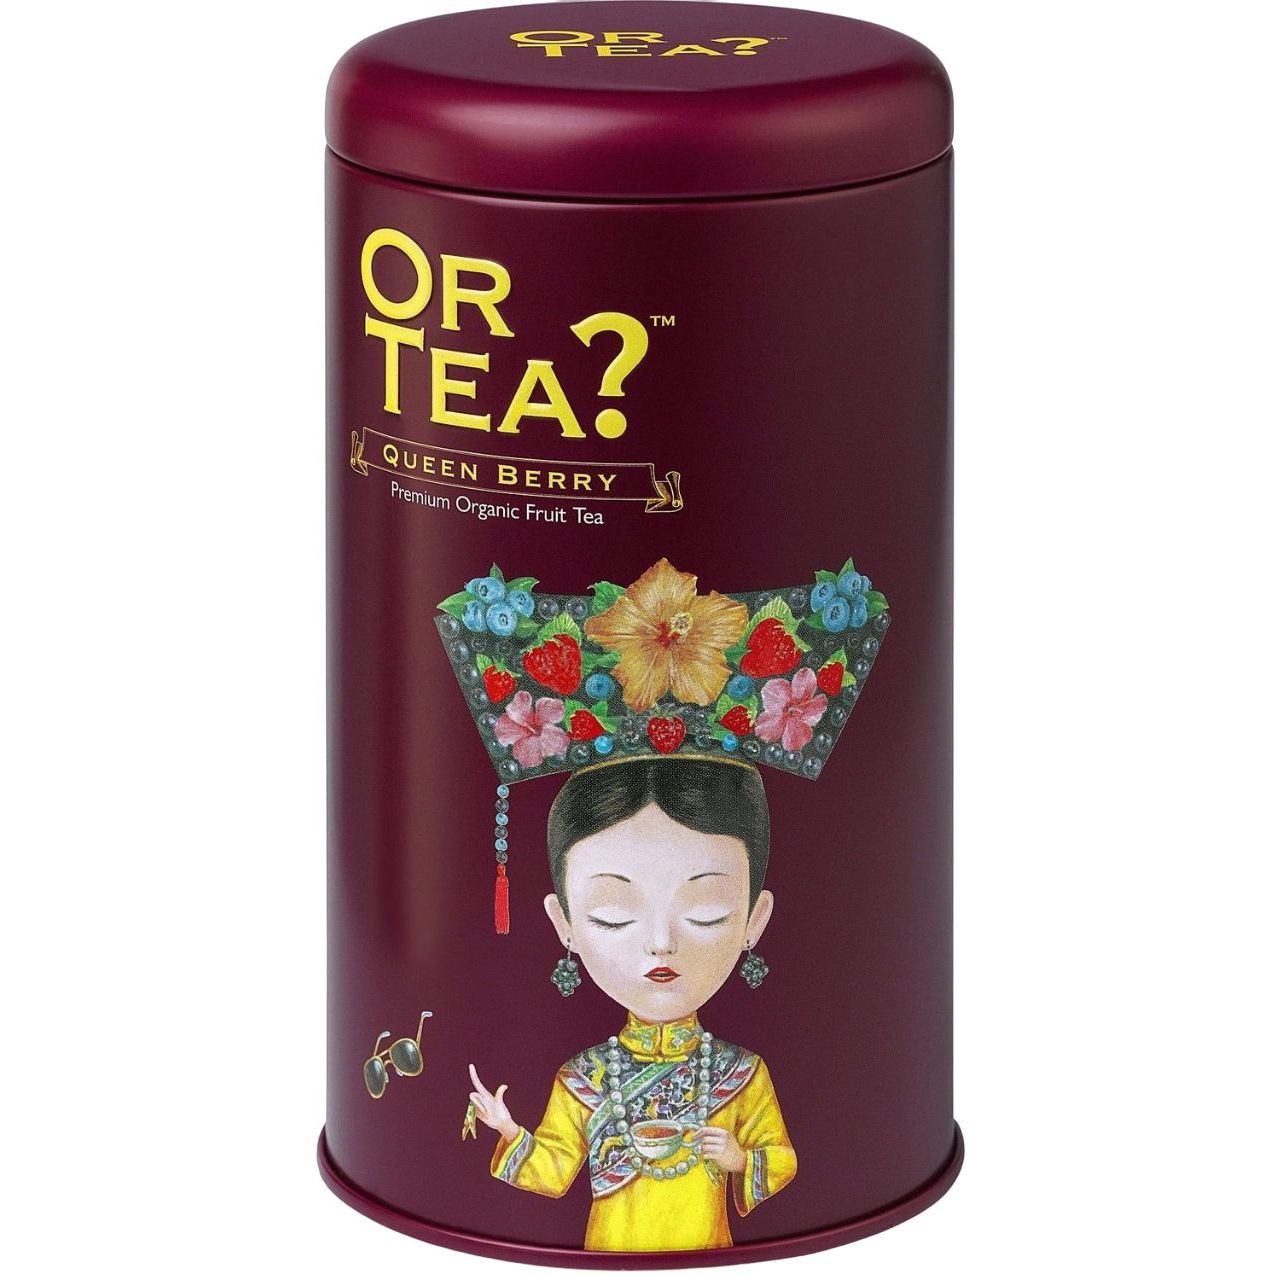 Органічний фруктовий чай Or Tea? Queen Berry з чорницями та червоними фруктами 100 г (932959) - фото 1